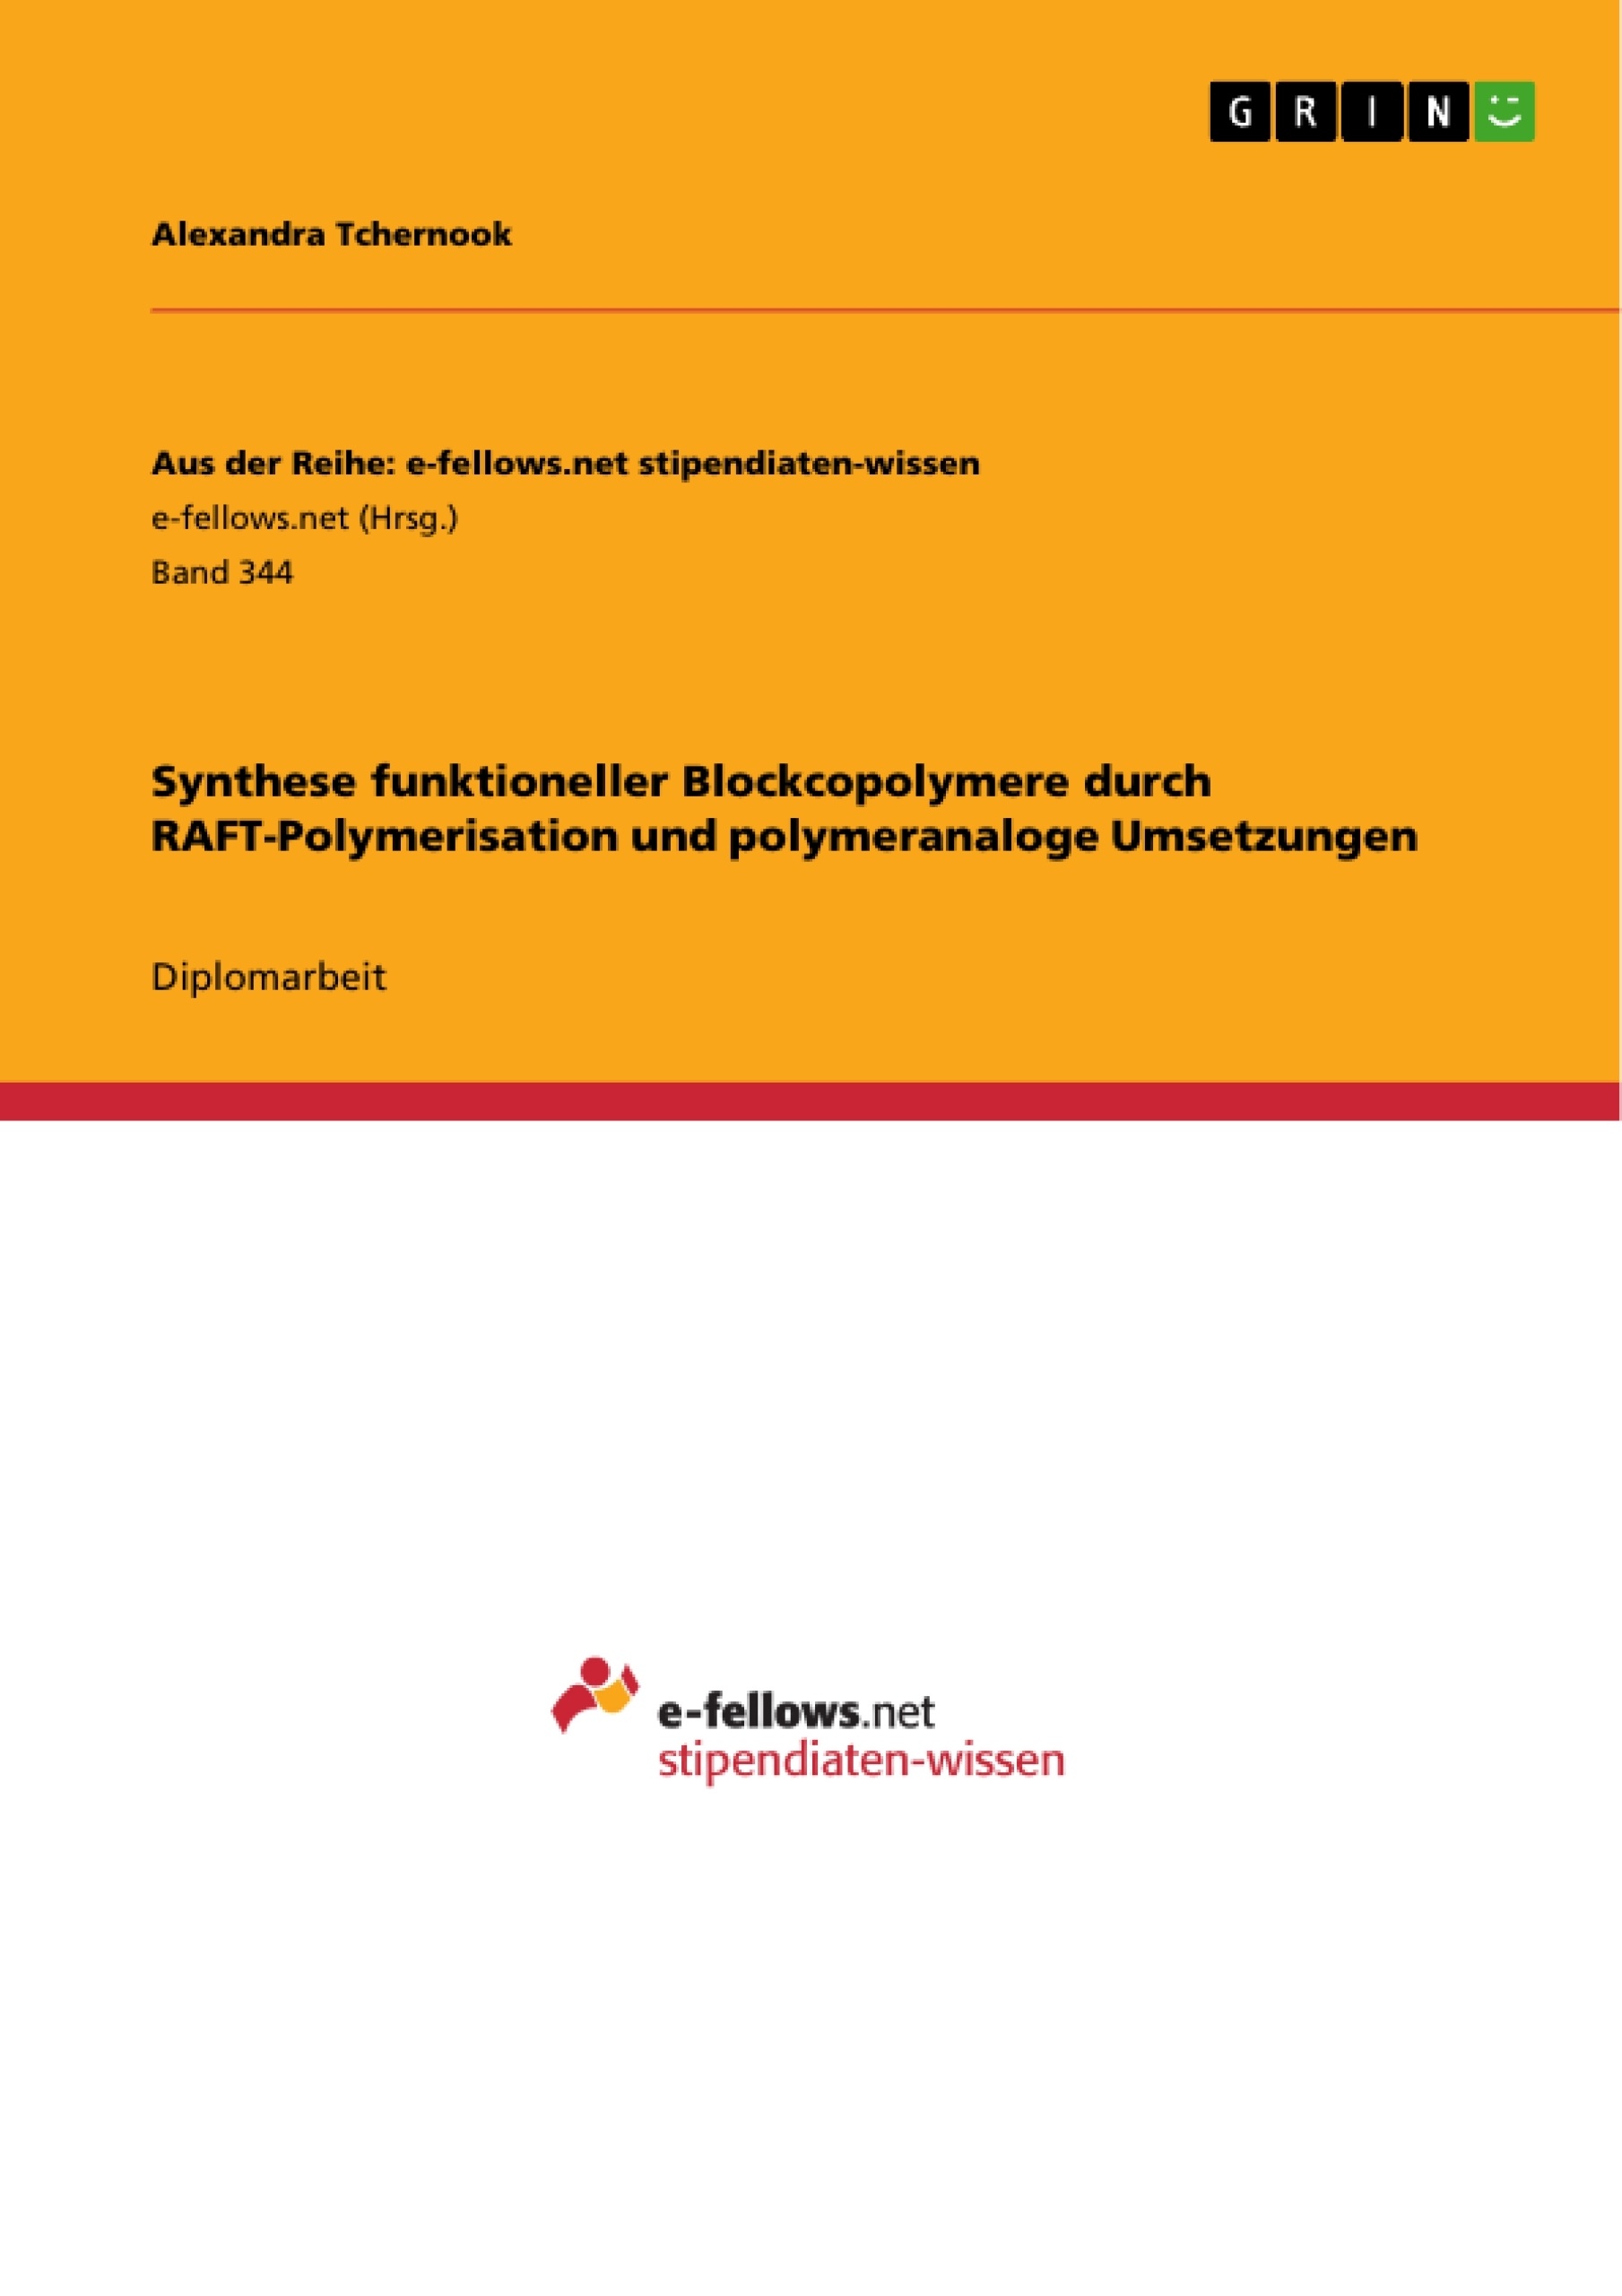 Title: Synthese funktioneller Blockcopolymere durch RAFT-Polymerisation und polymeranaloge Umsetzungen